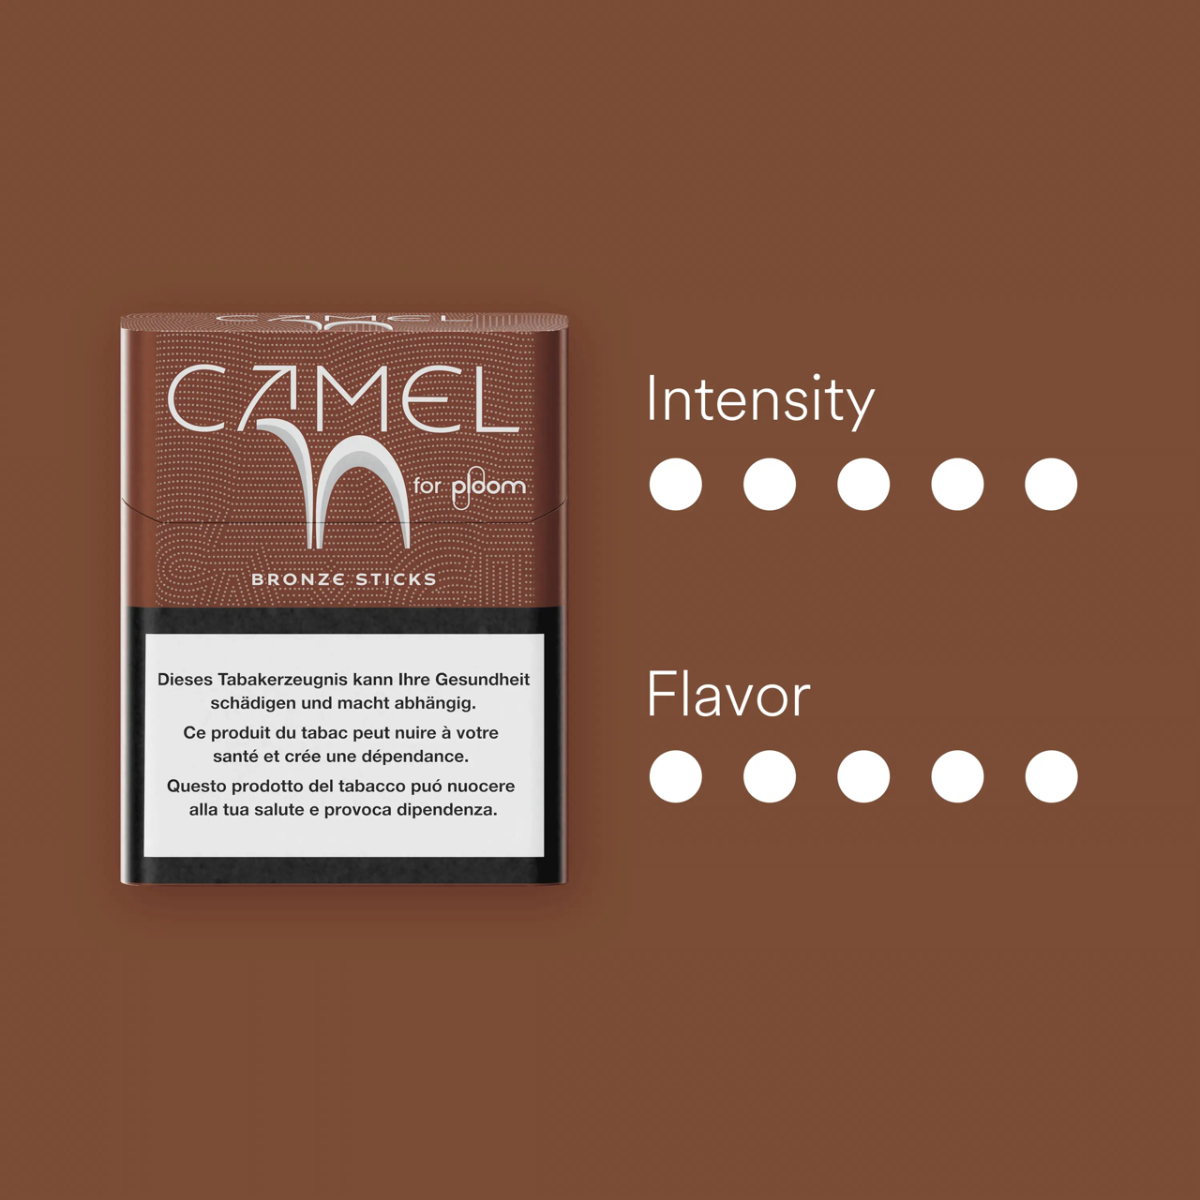 Camel Bronze sticks für ploom Eigenschaften
